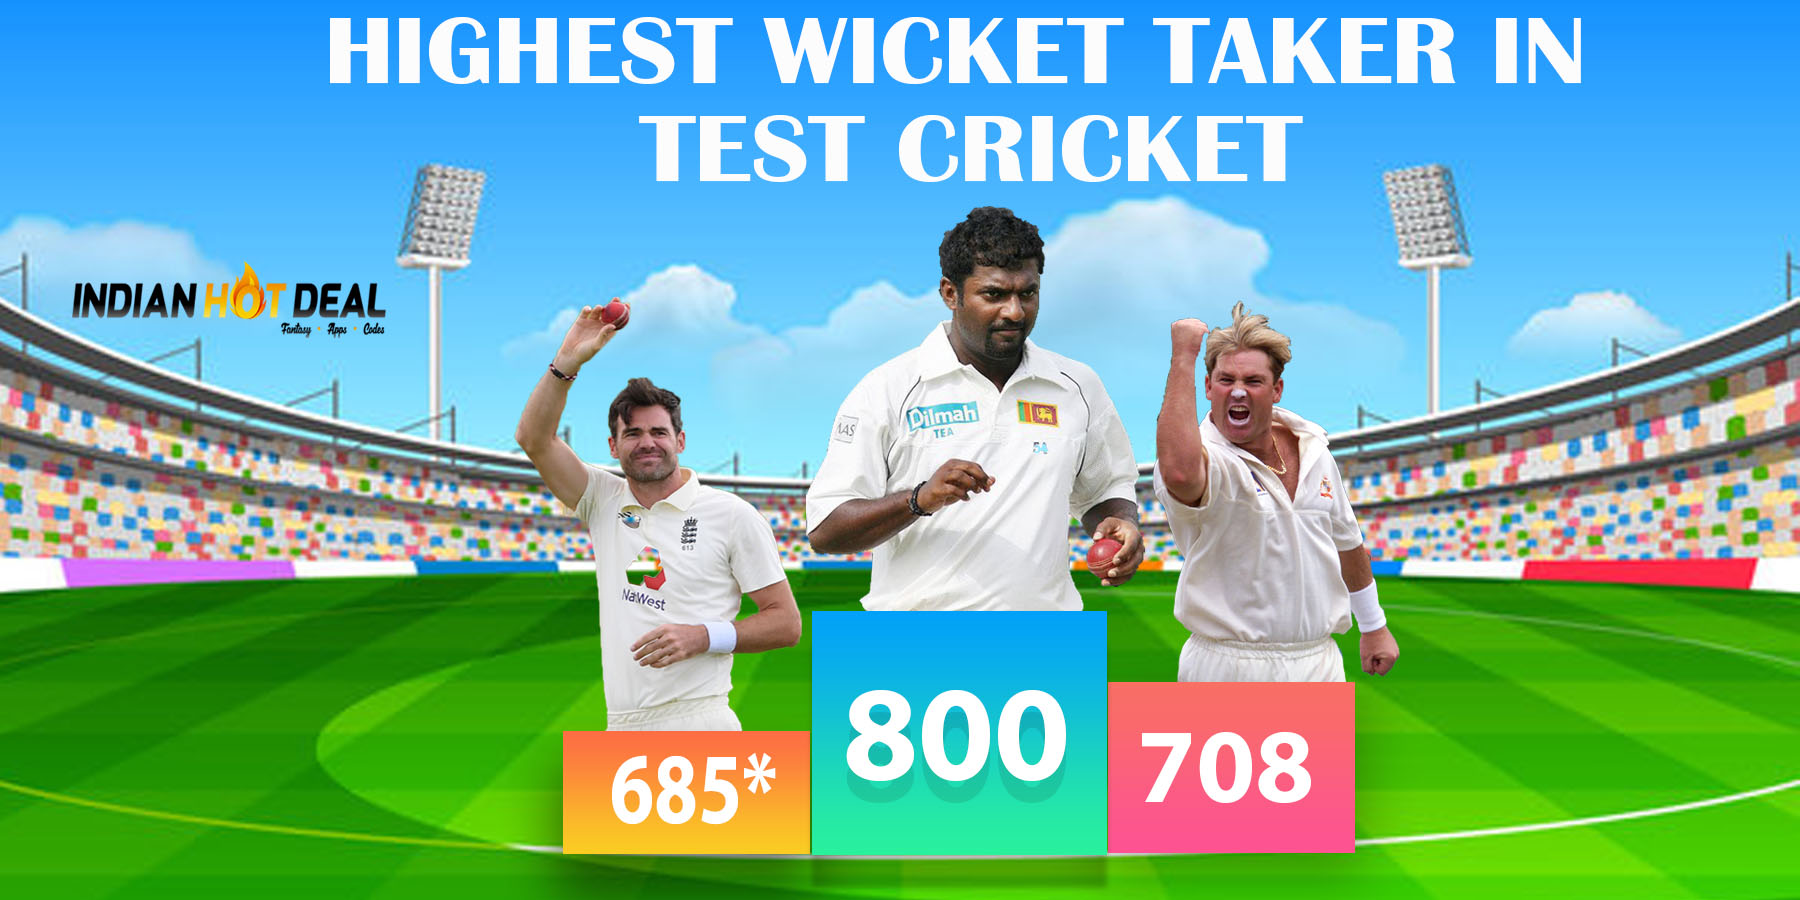 Highest Wicket Taker in Test Cricket